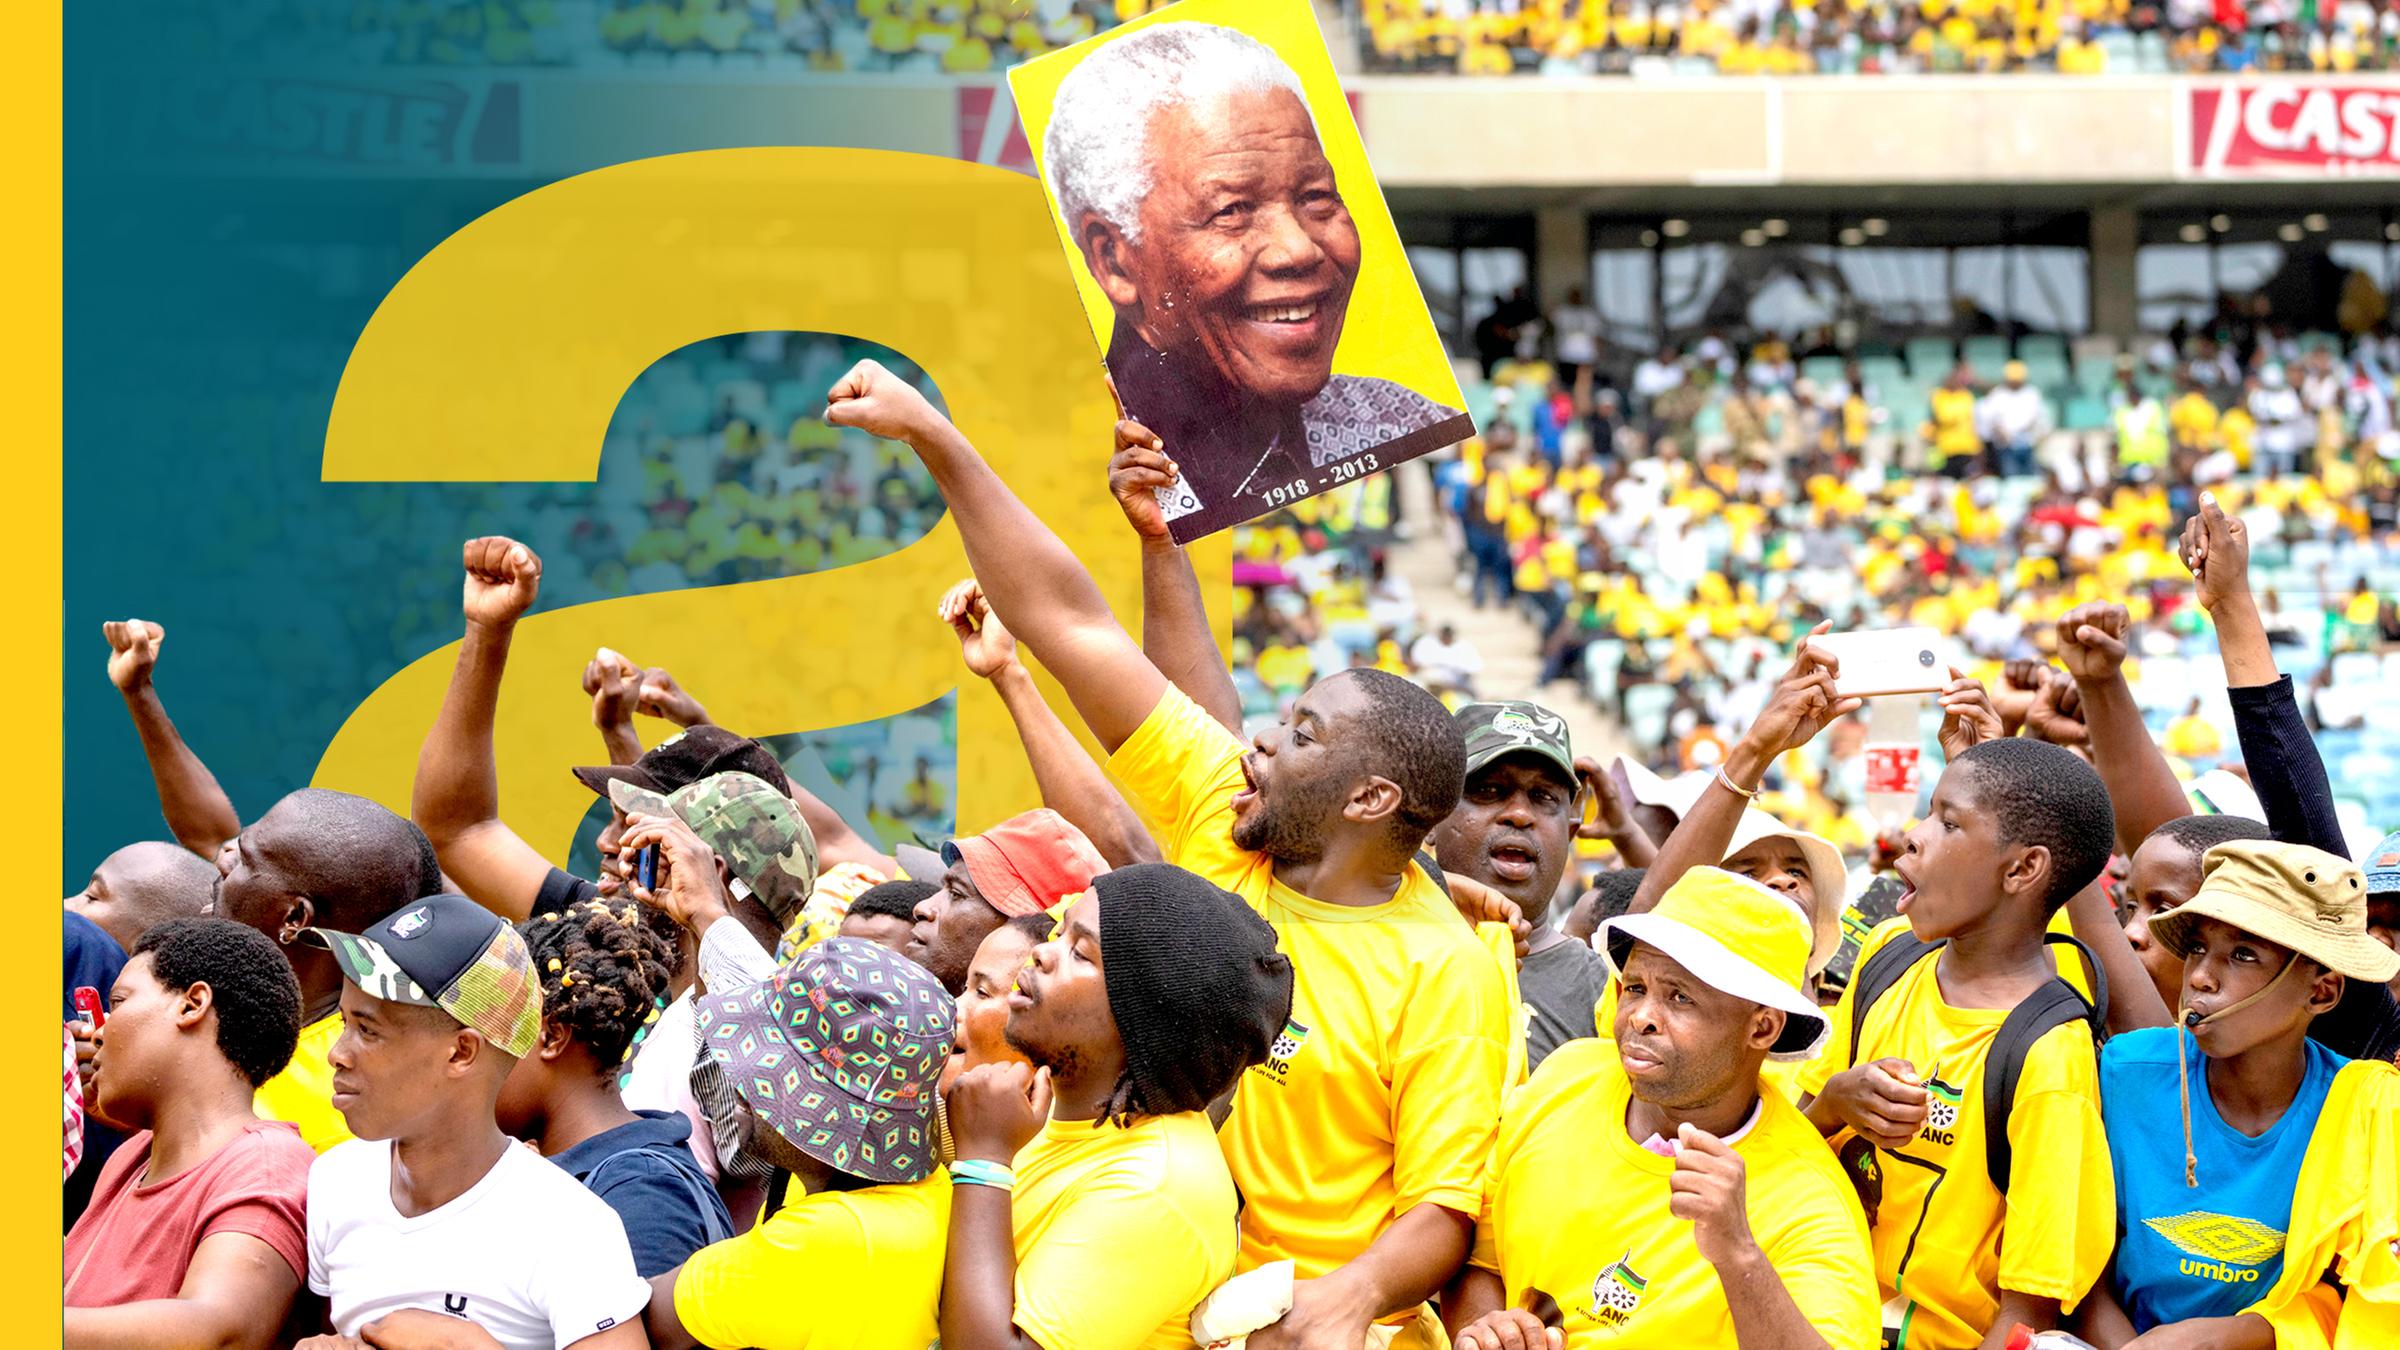 Südafrika: Menschenmenge, viele Menschen mit erhobenen Fäusten, einer hält Plakat mit Nelson Mandela hoch